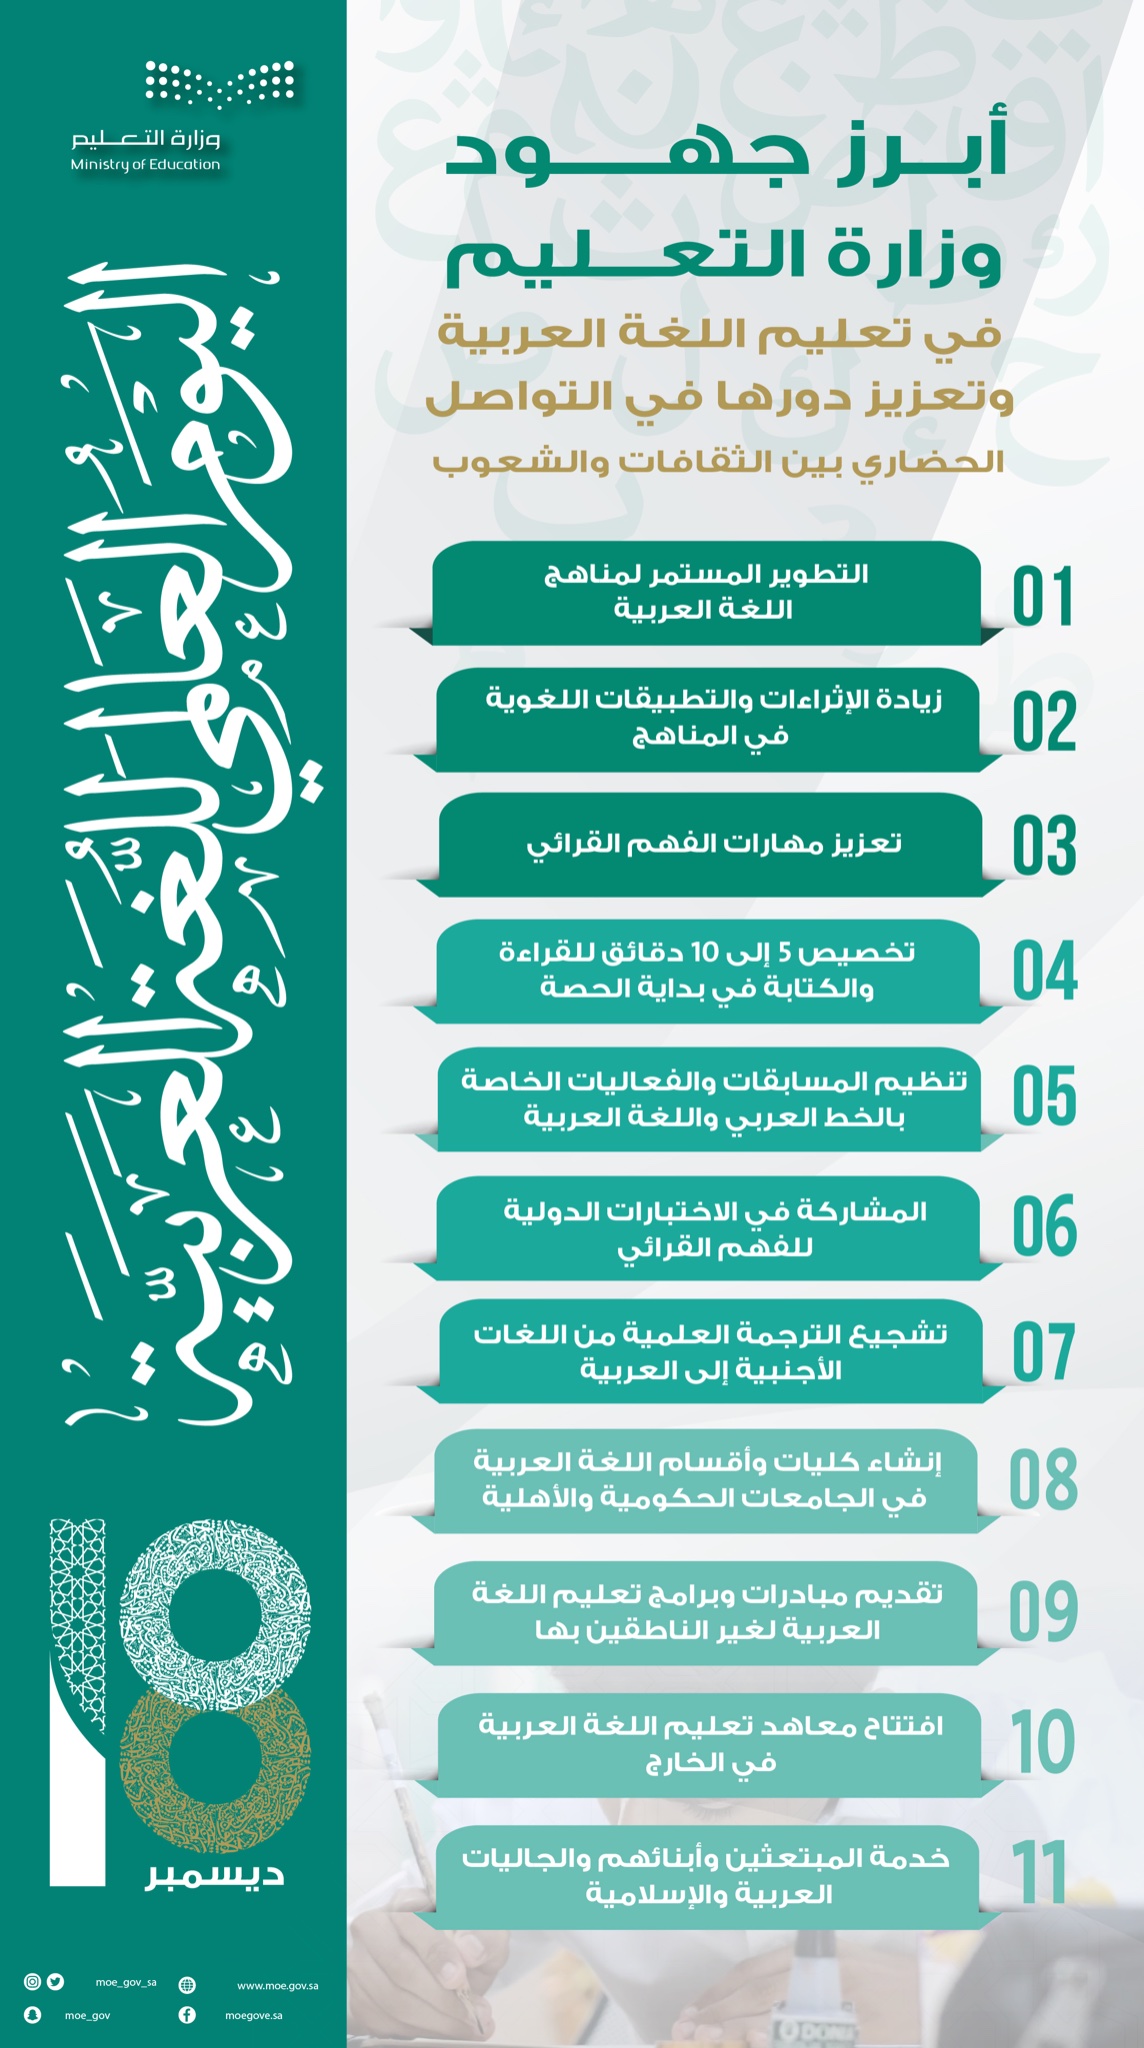 أبرز جهود وزارة التعليم السعودية في تعليم اللغة العربية وتعزيز دورها في التواصل